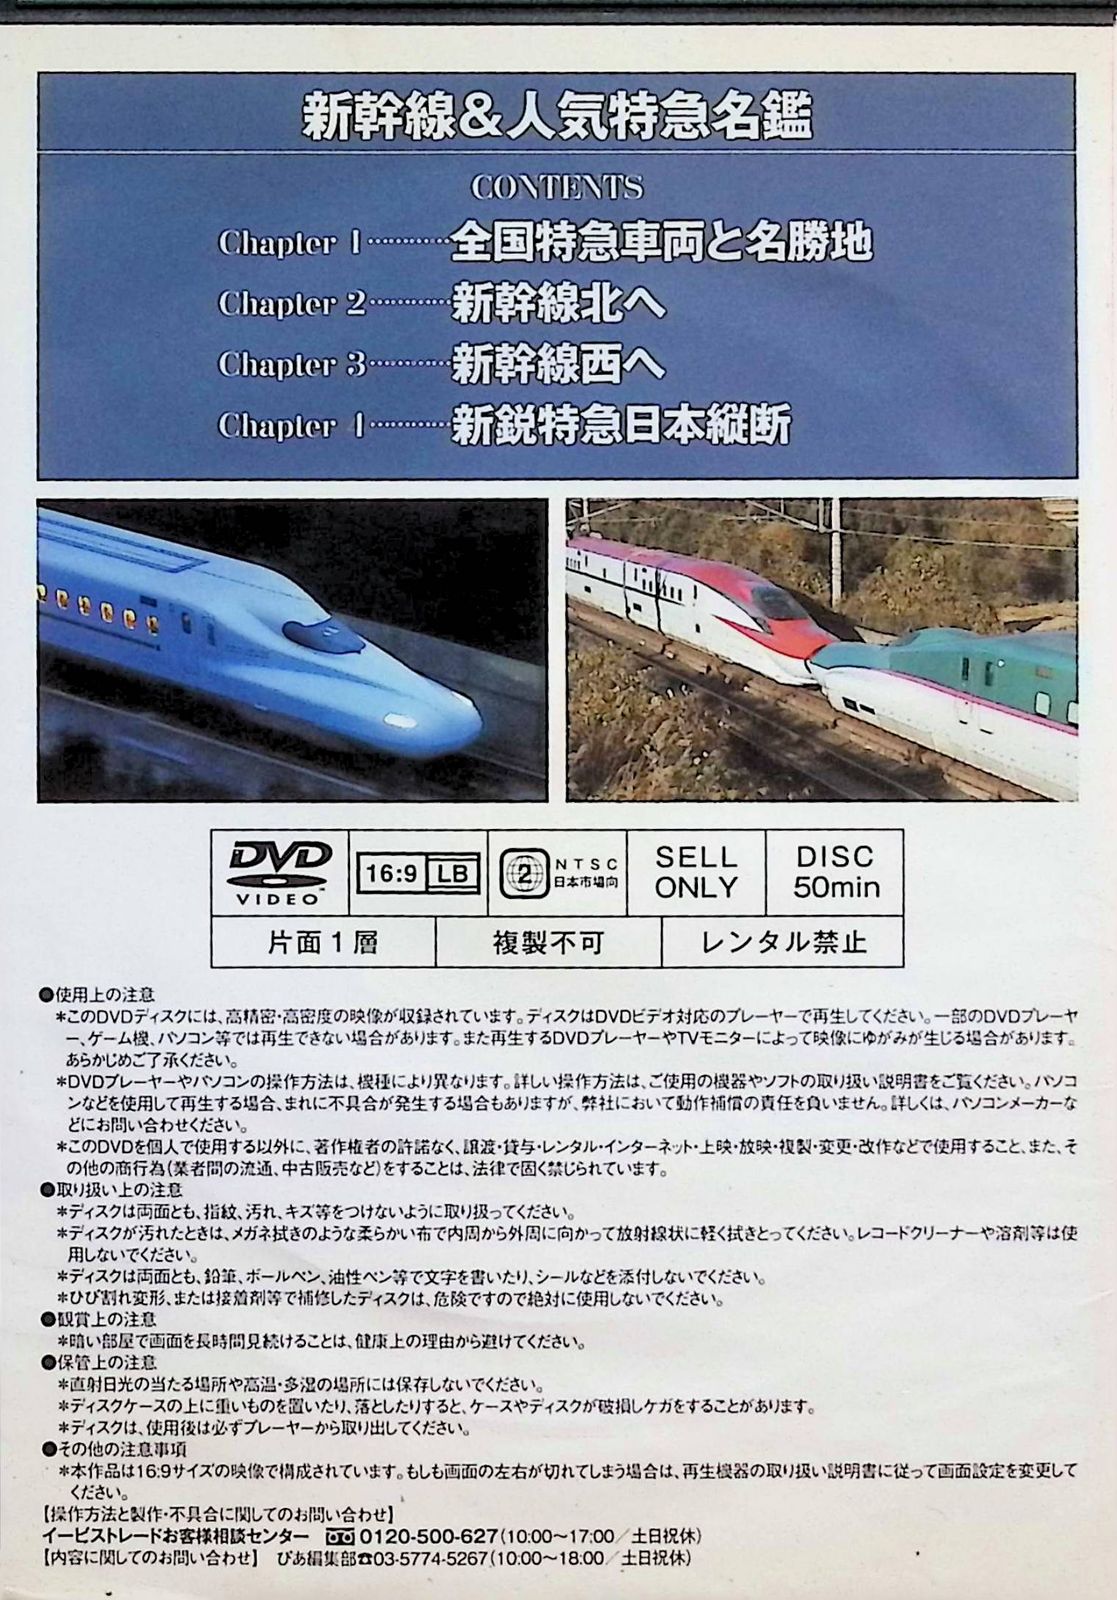 その他DVD 日本の新幹線・特急 映像と走行音で愉しむ鉄道のの世界 - 趣味・教養